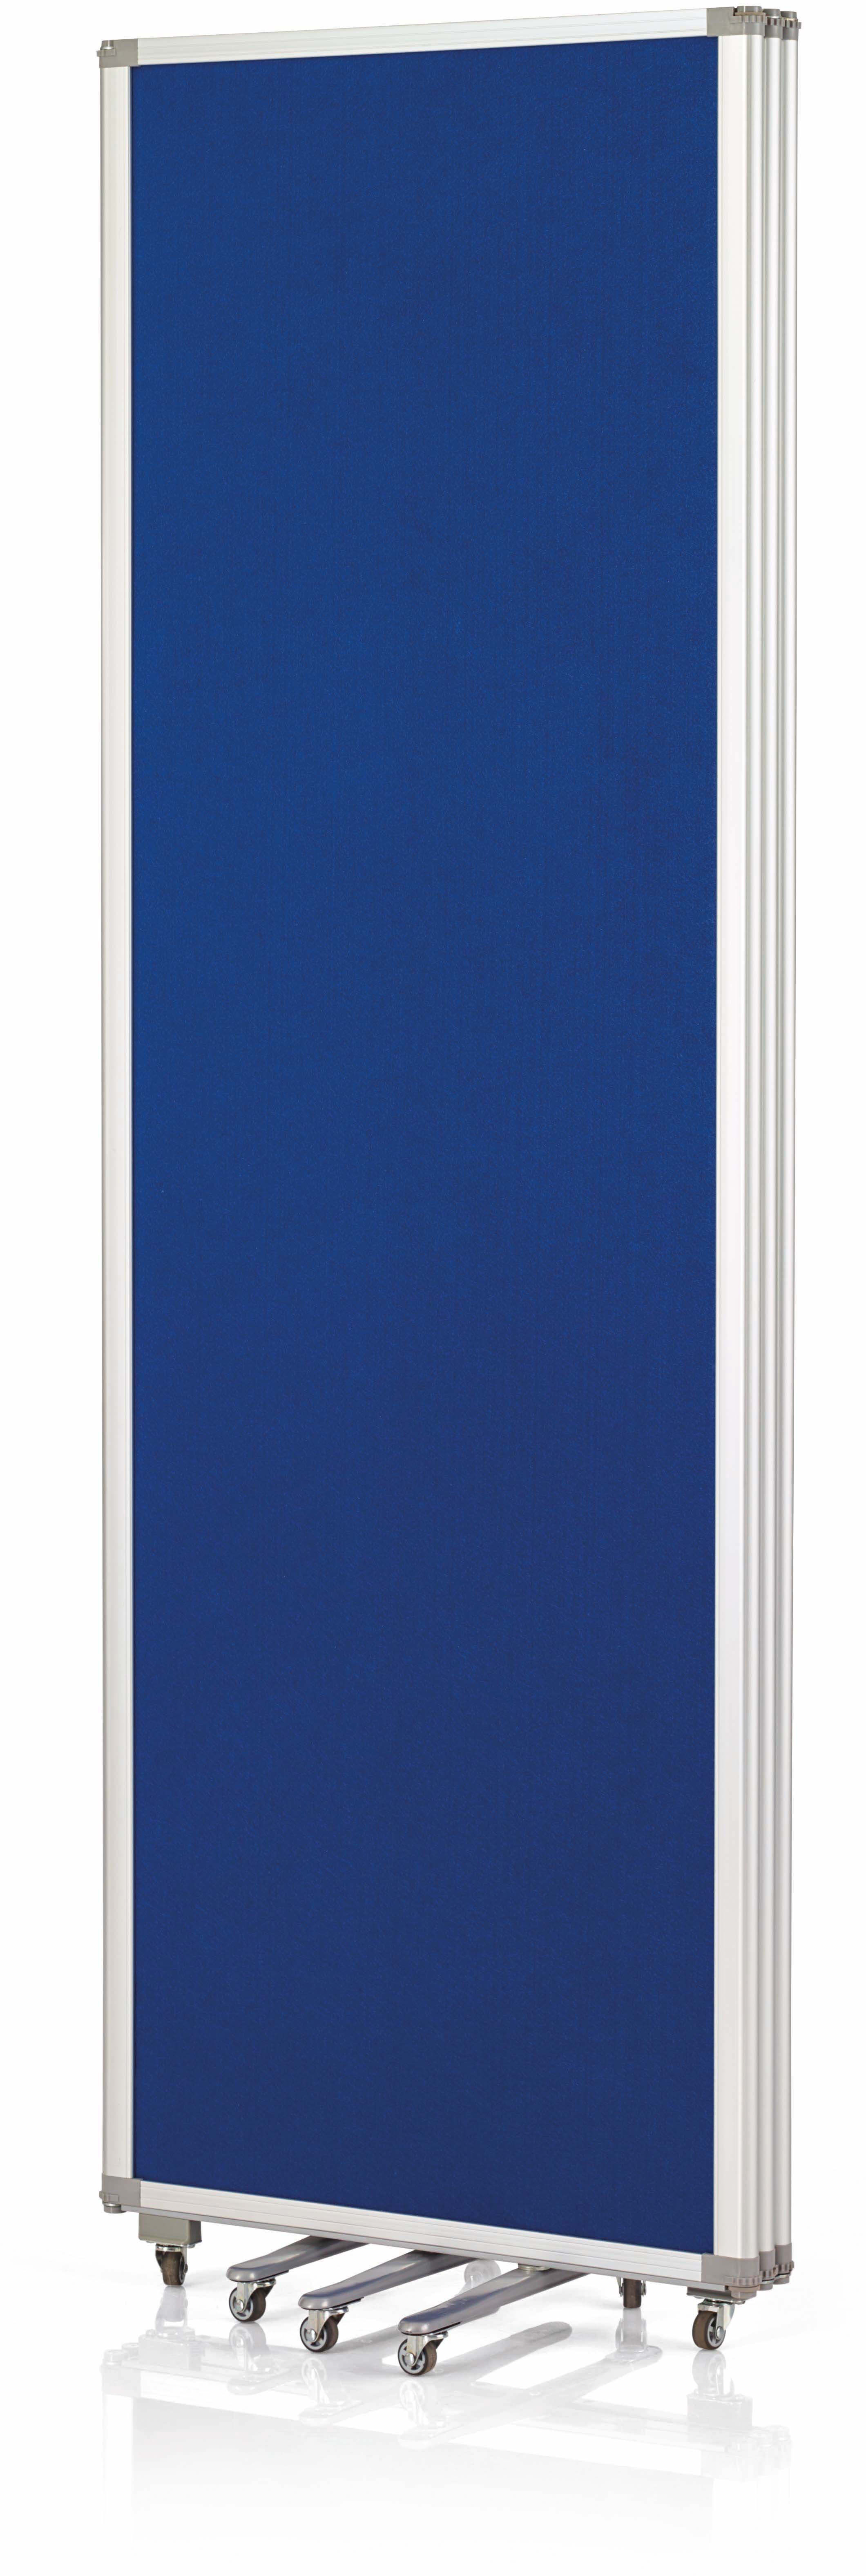 MAGNETOPLAN Murale de présent. mobile 1105303 bleu, pliable 600x1800mm